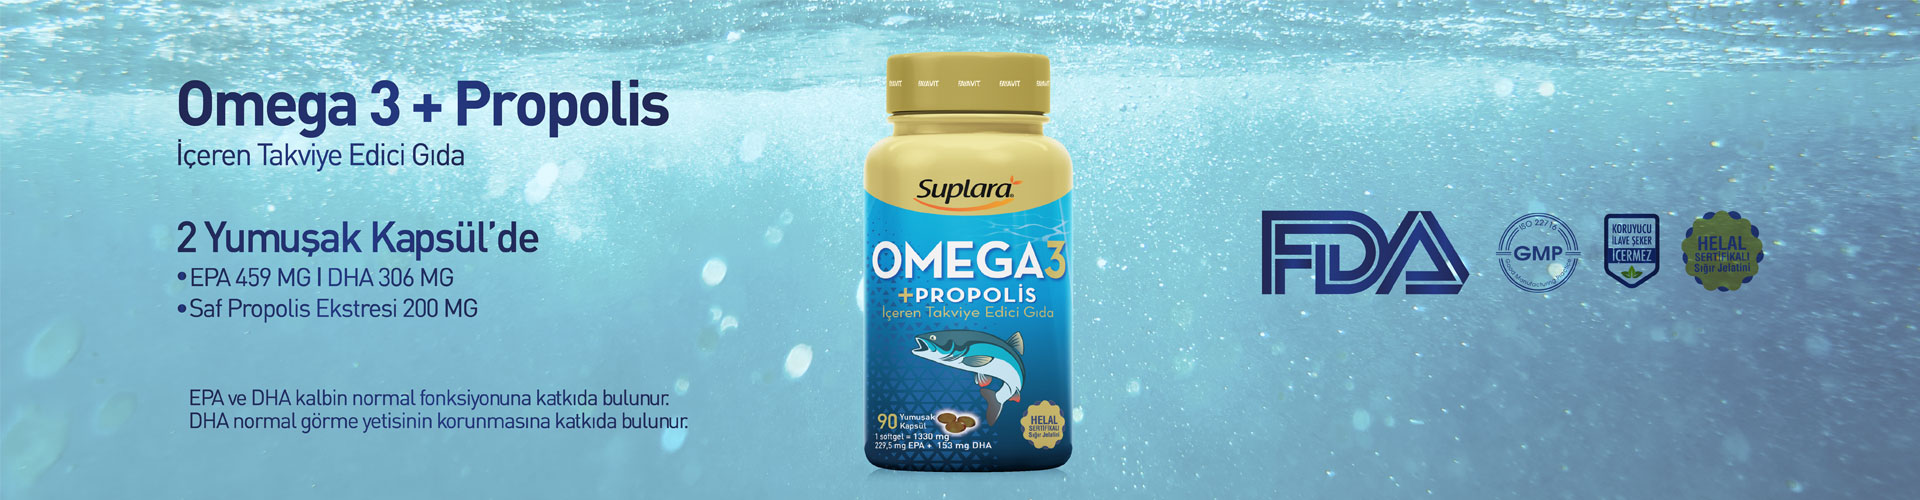 omega3-propolis